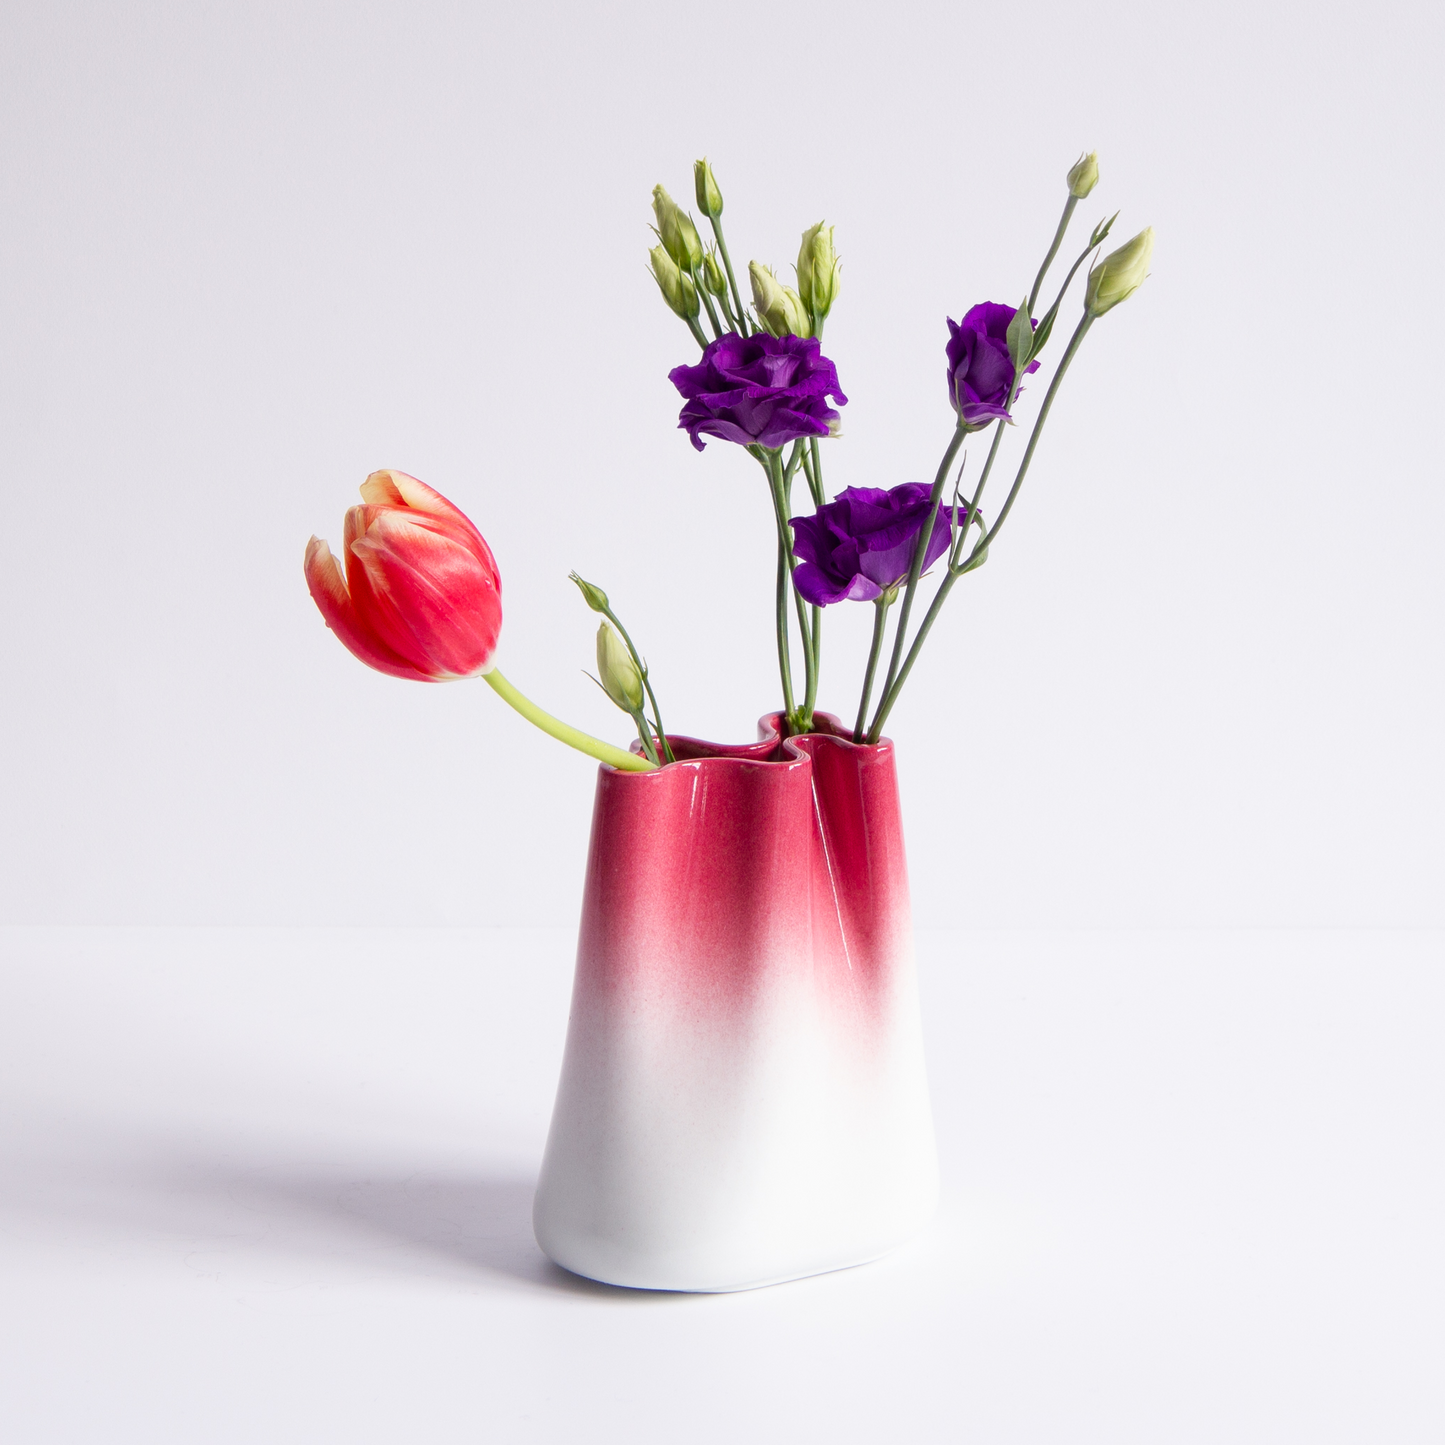 [JUMONY] High Gloss Porcelain Vase - Small in Santorini Sunset